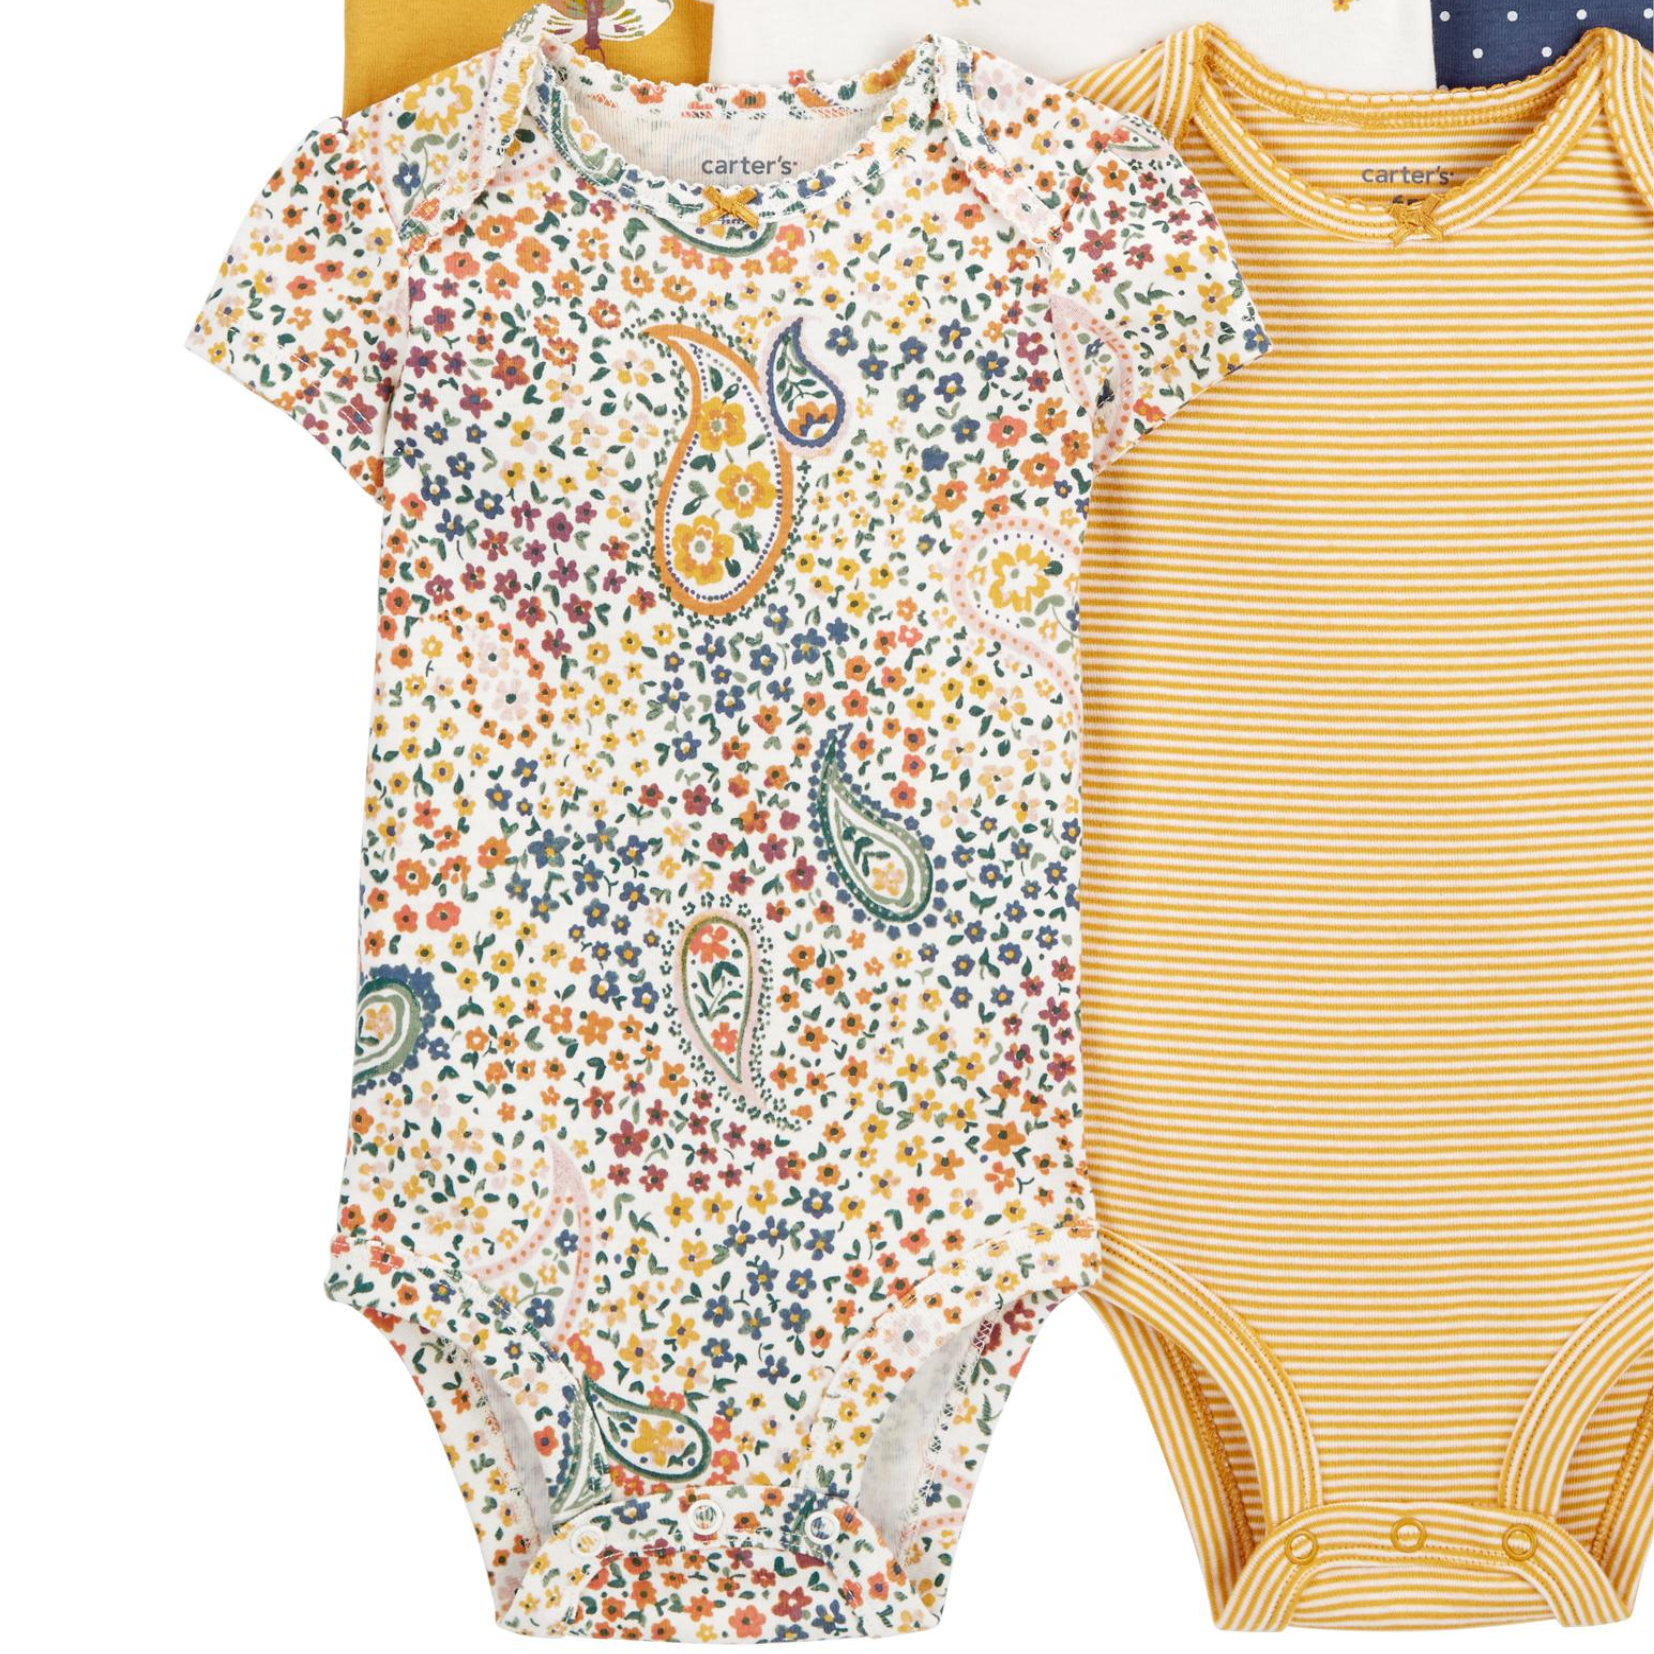 Carter's Baby Bodysuits